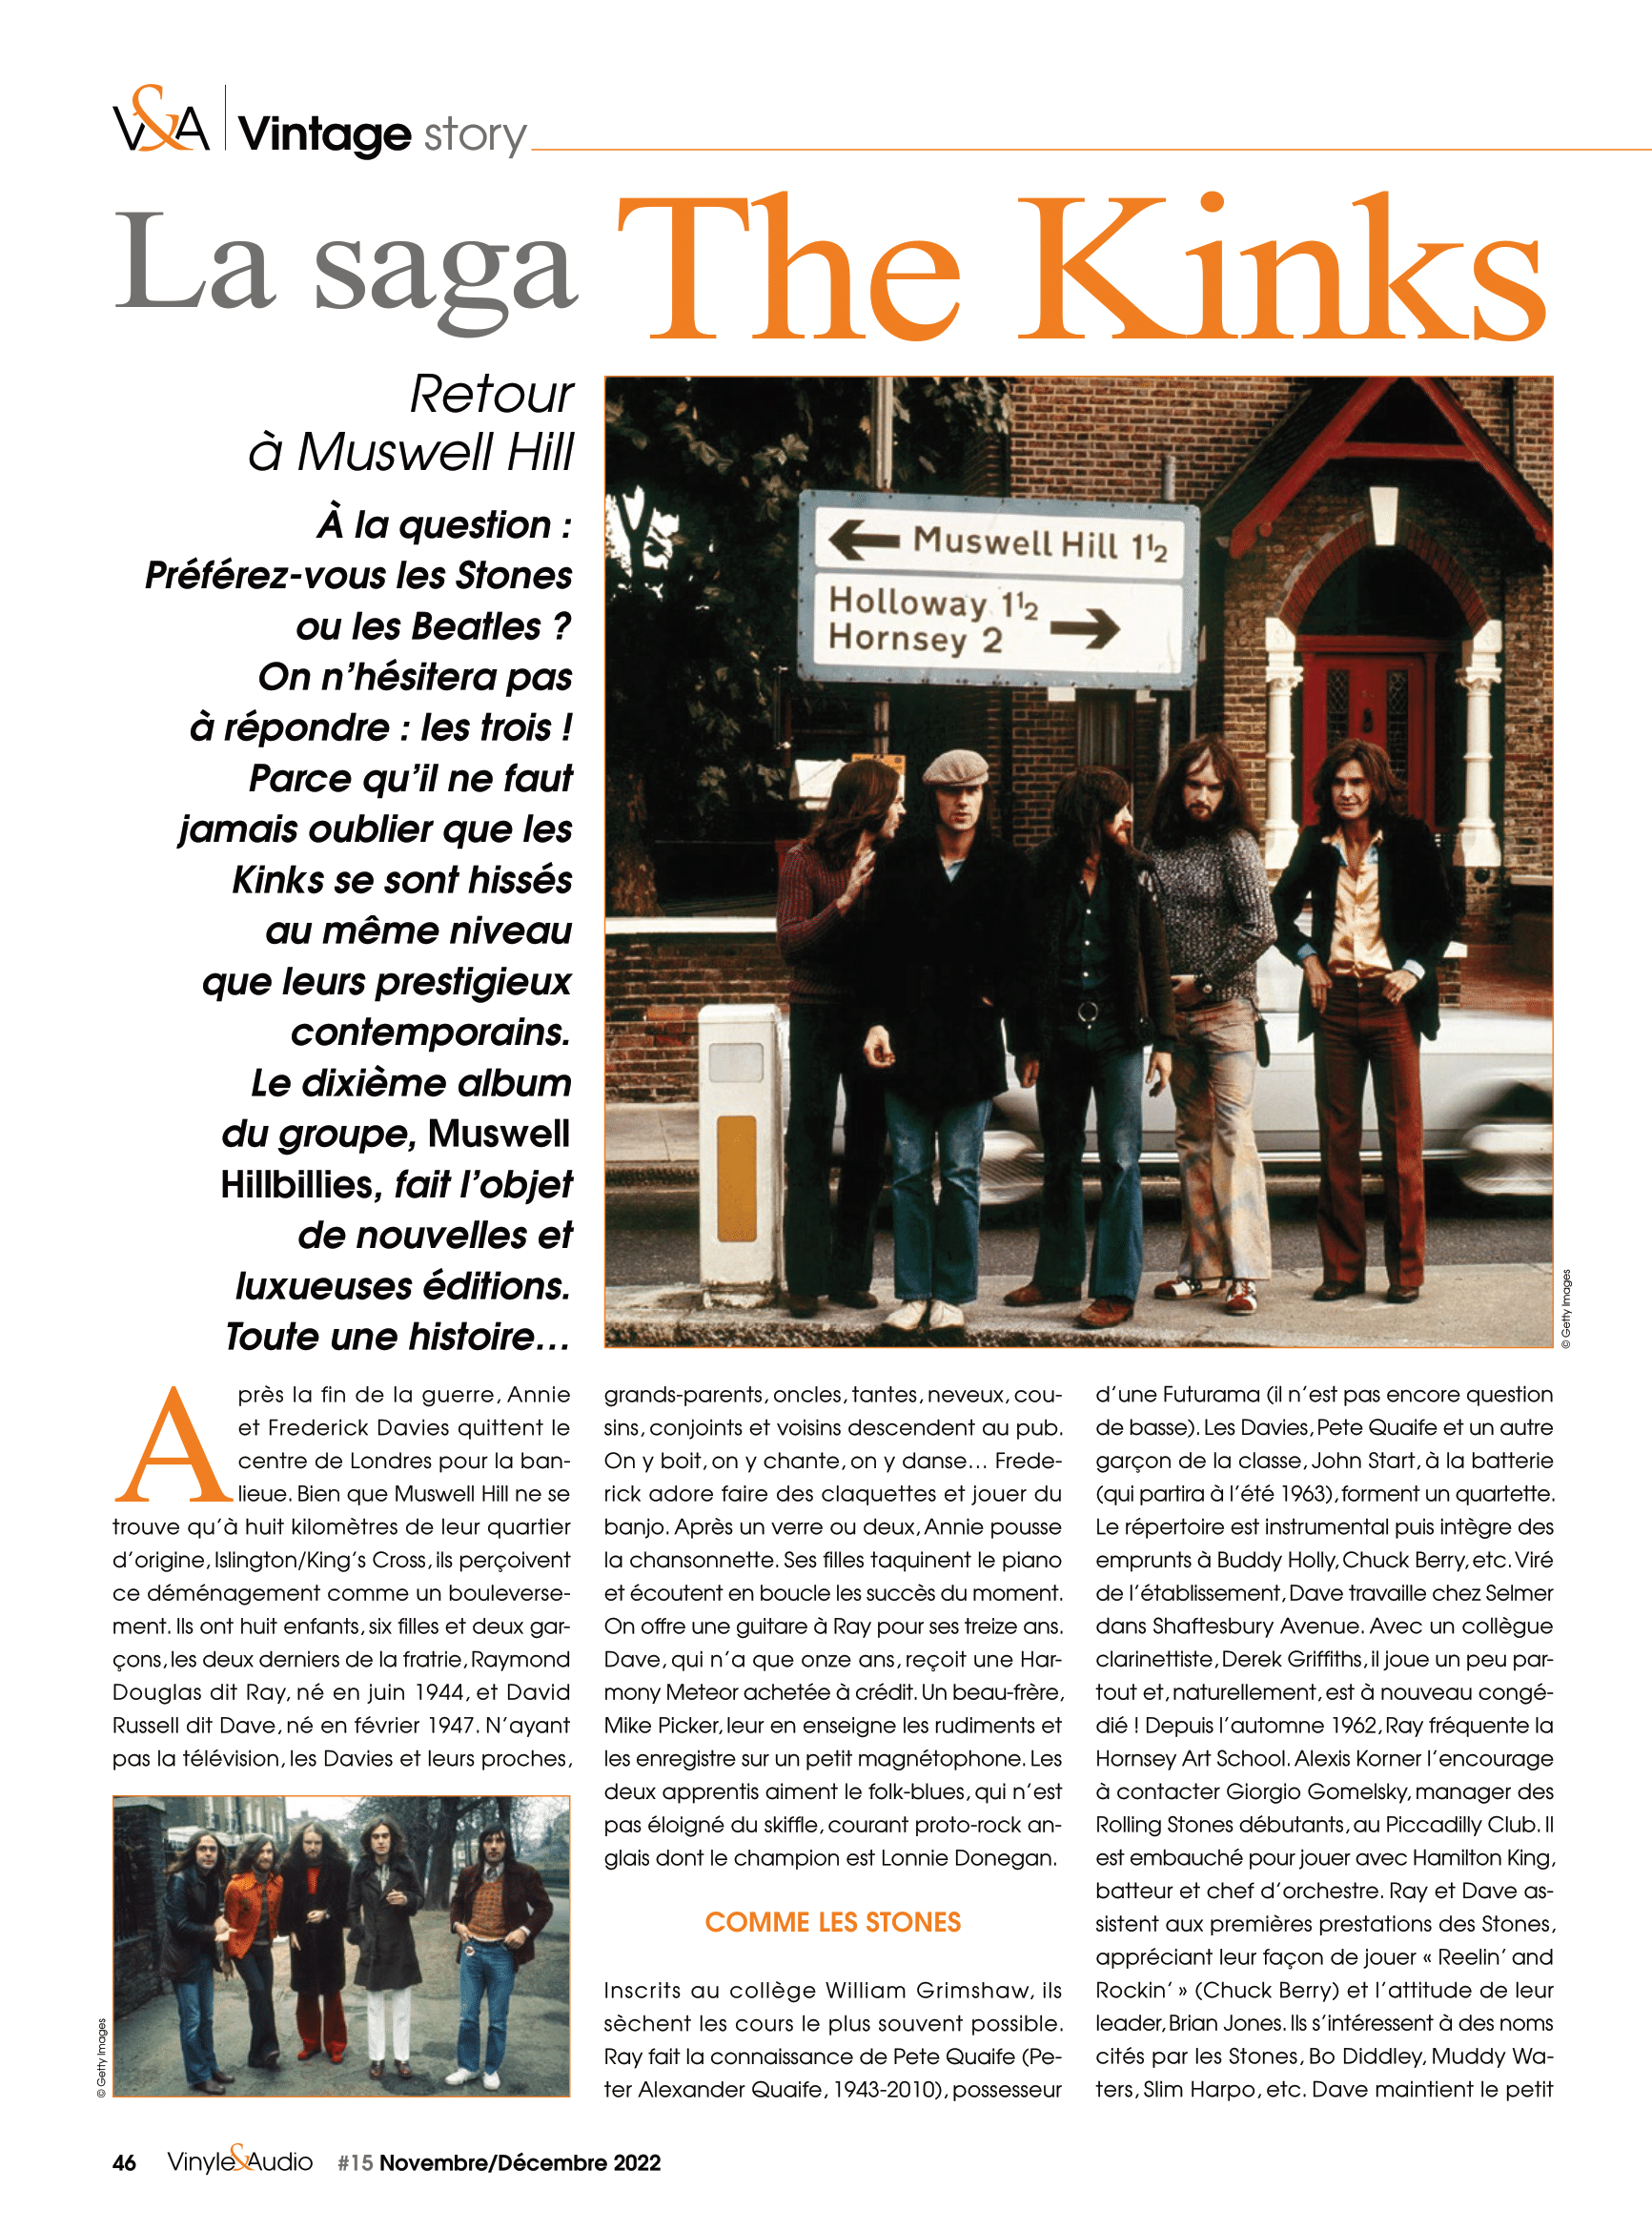 Vinyle & Audio n°15 : vintage story avec la saga The Kinks